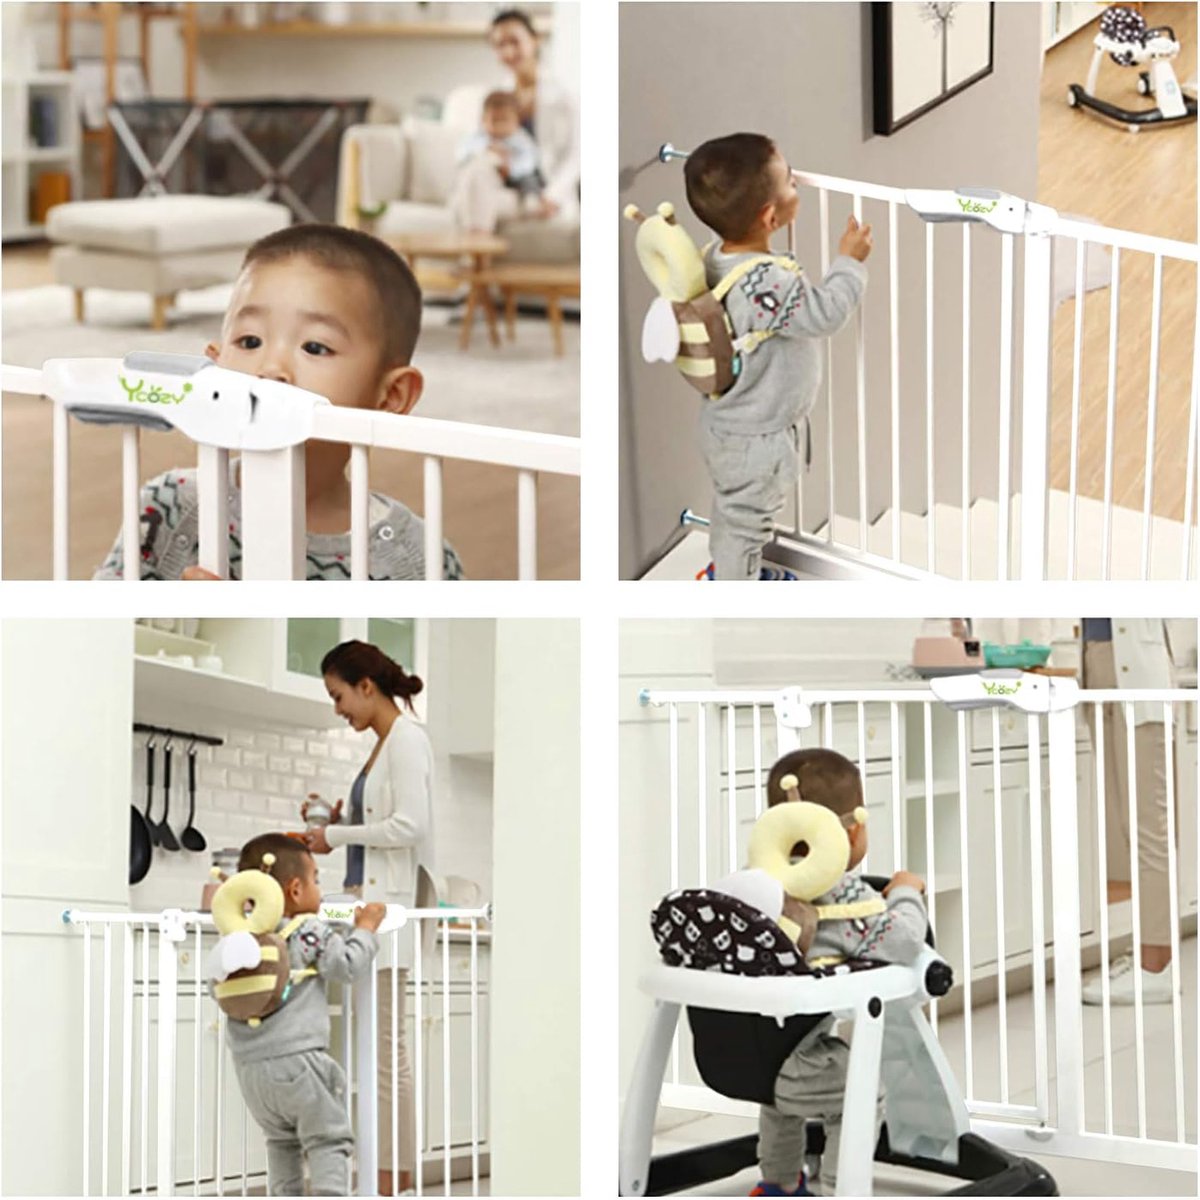 Barriere de Securite porte et escalier 75-82cm sans perçage, adaptée pour  les enfants ,animaux auto-close métal blanc